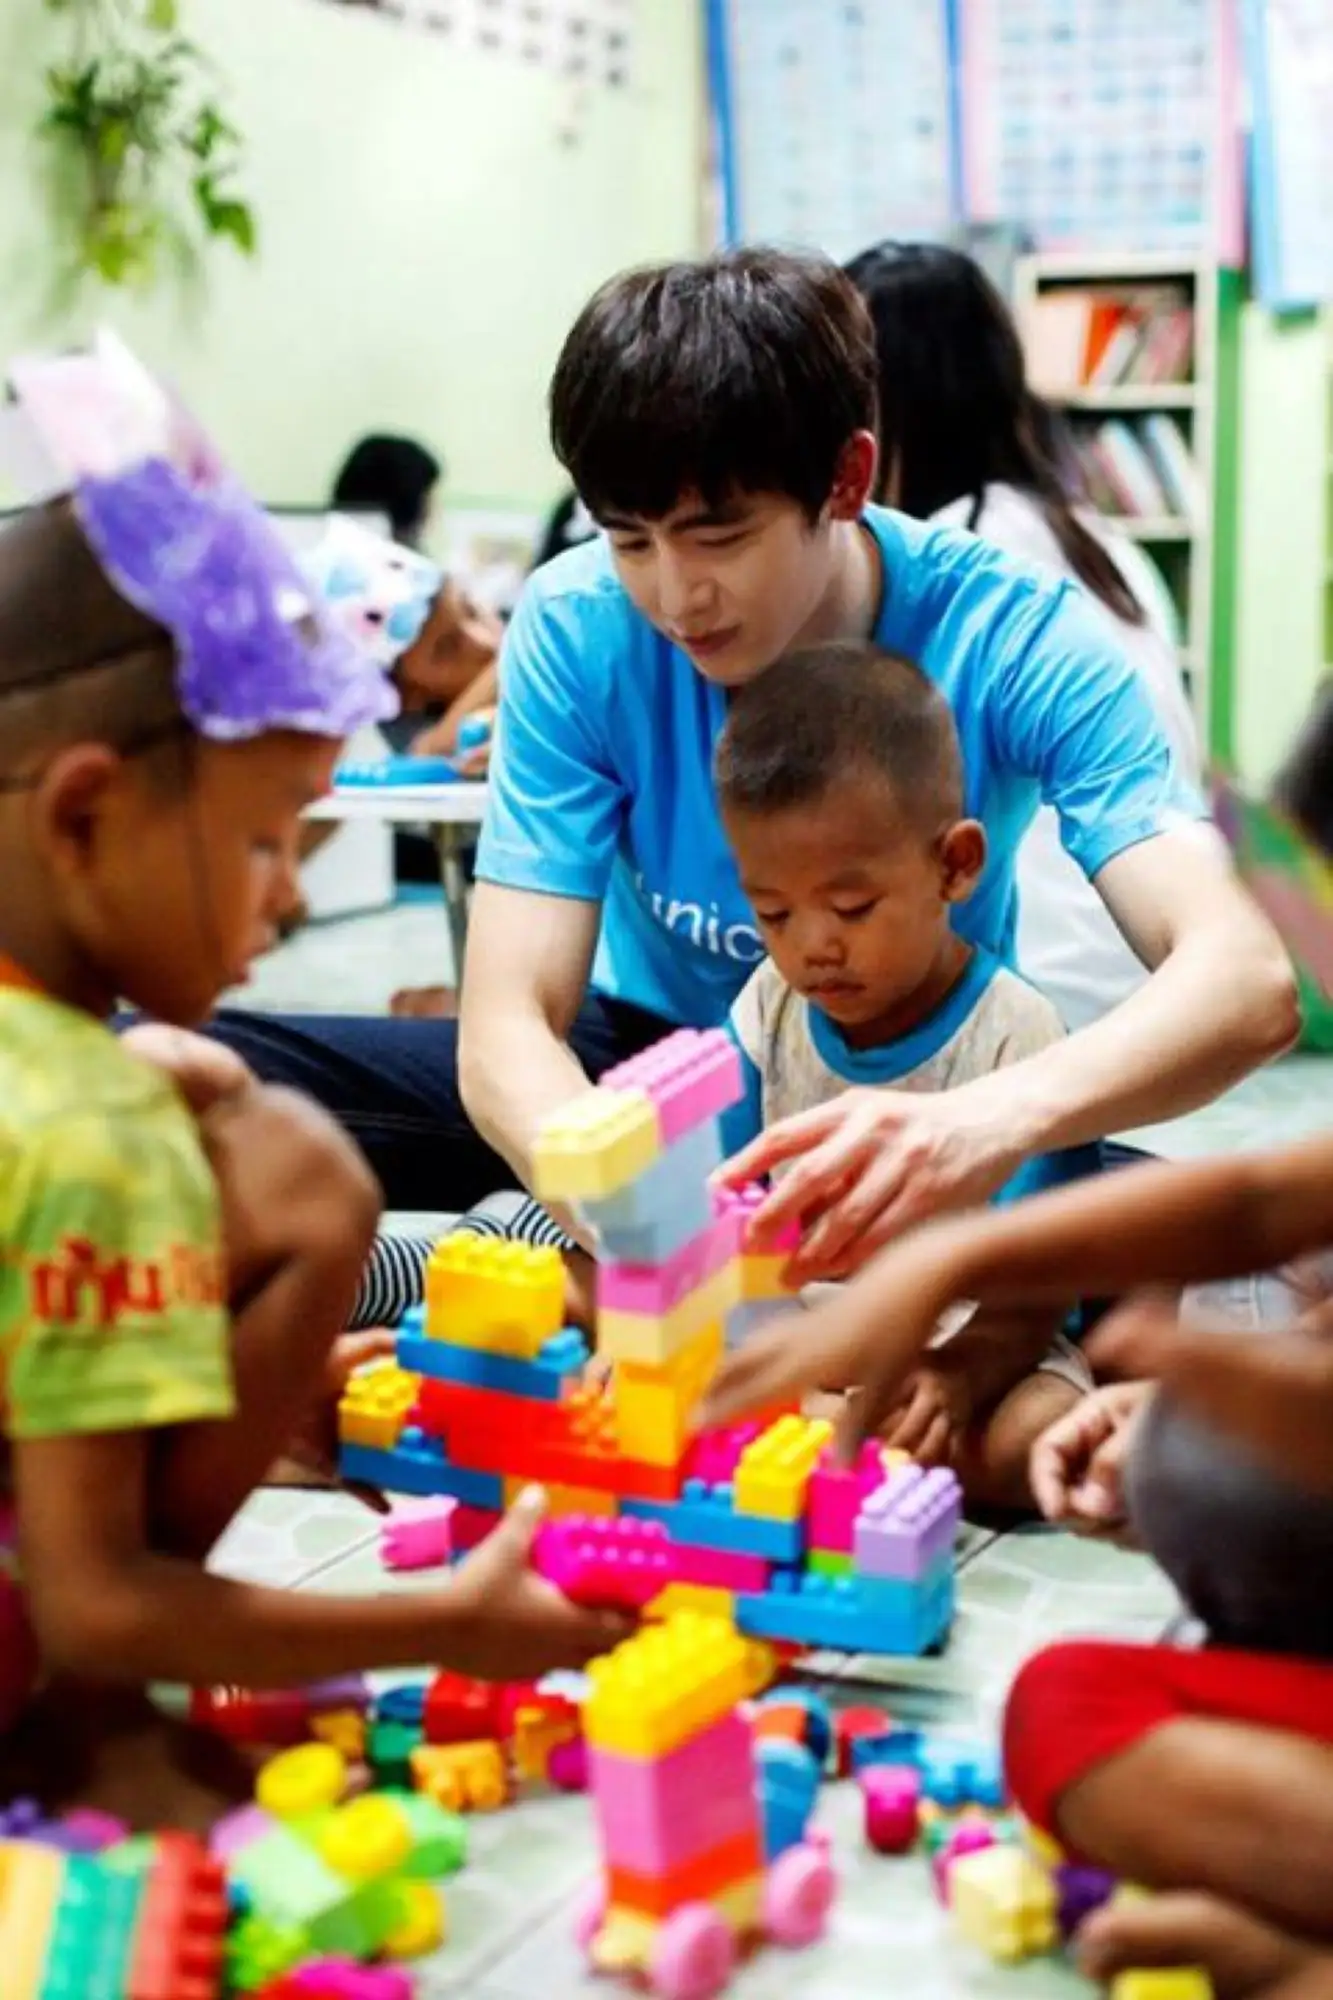 作為聯合國兒童基金會的大使，尼坤會去一些貧困地區幫助兒童，做美食給孩子們吃（圖片來源：網路）